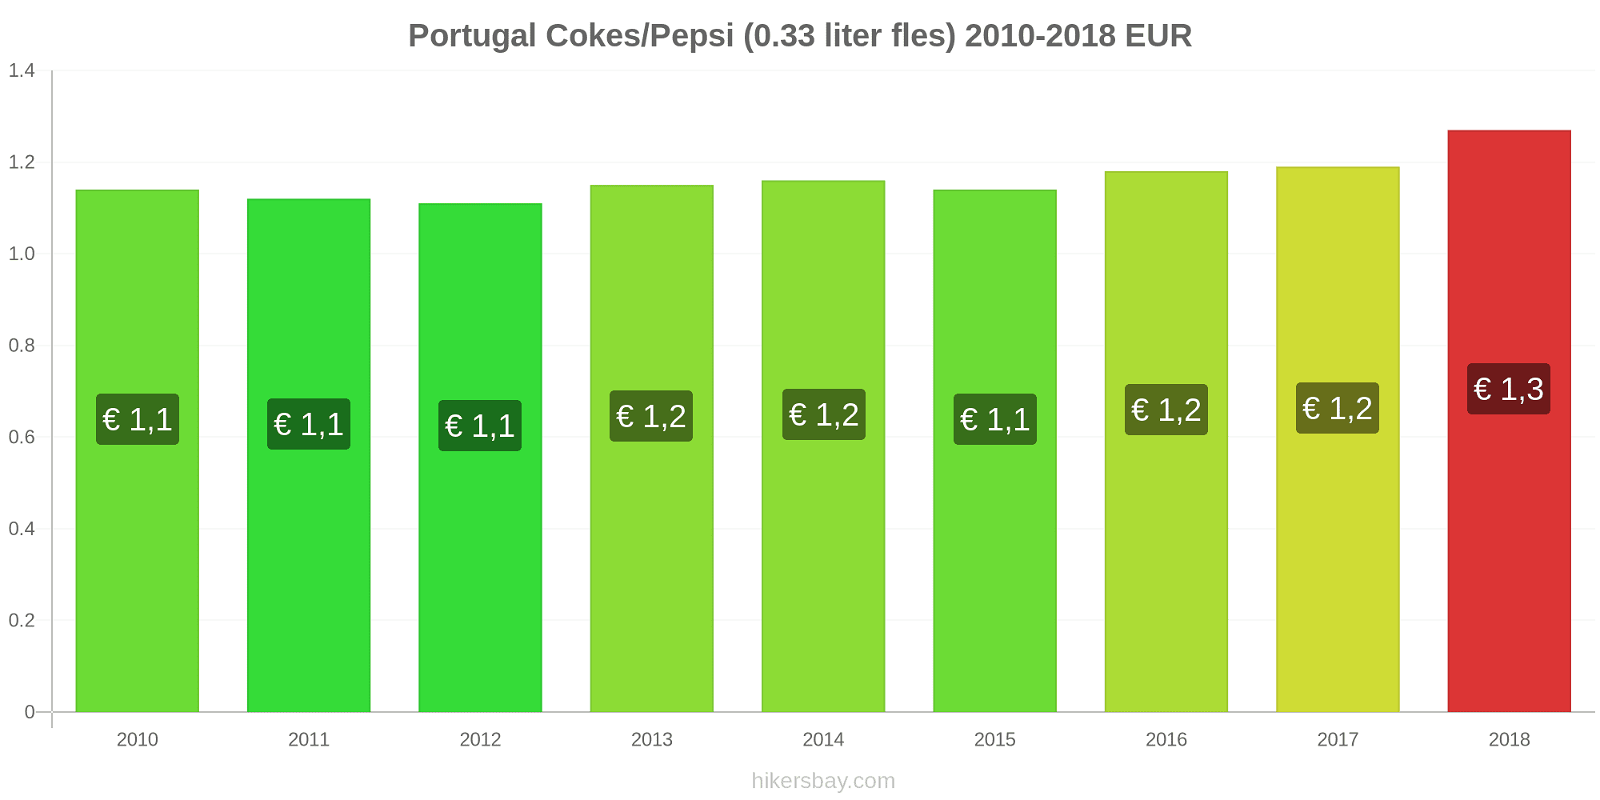 Portugal prijswijzigingen Coca-Cola/Pepsi (0.33 liter fles) hikersbay.com